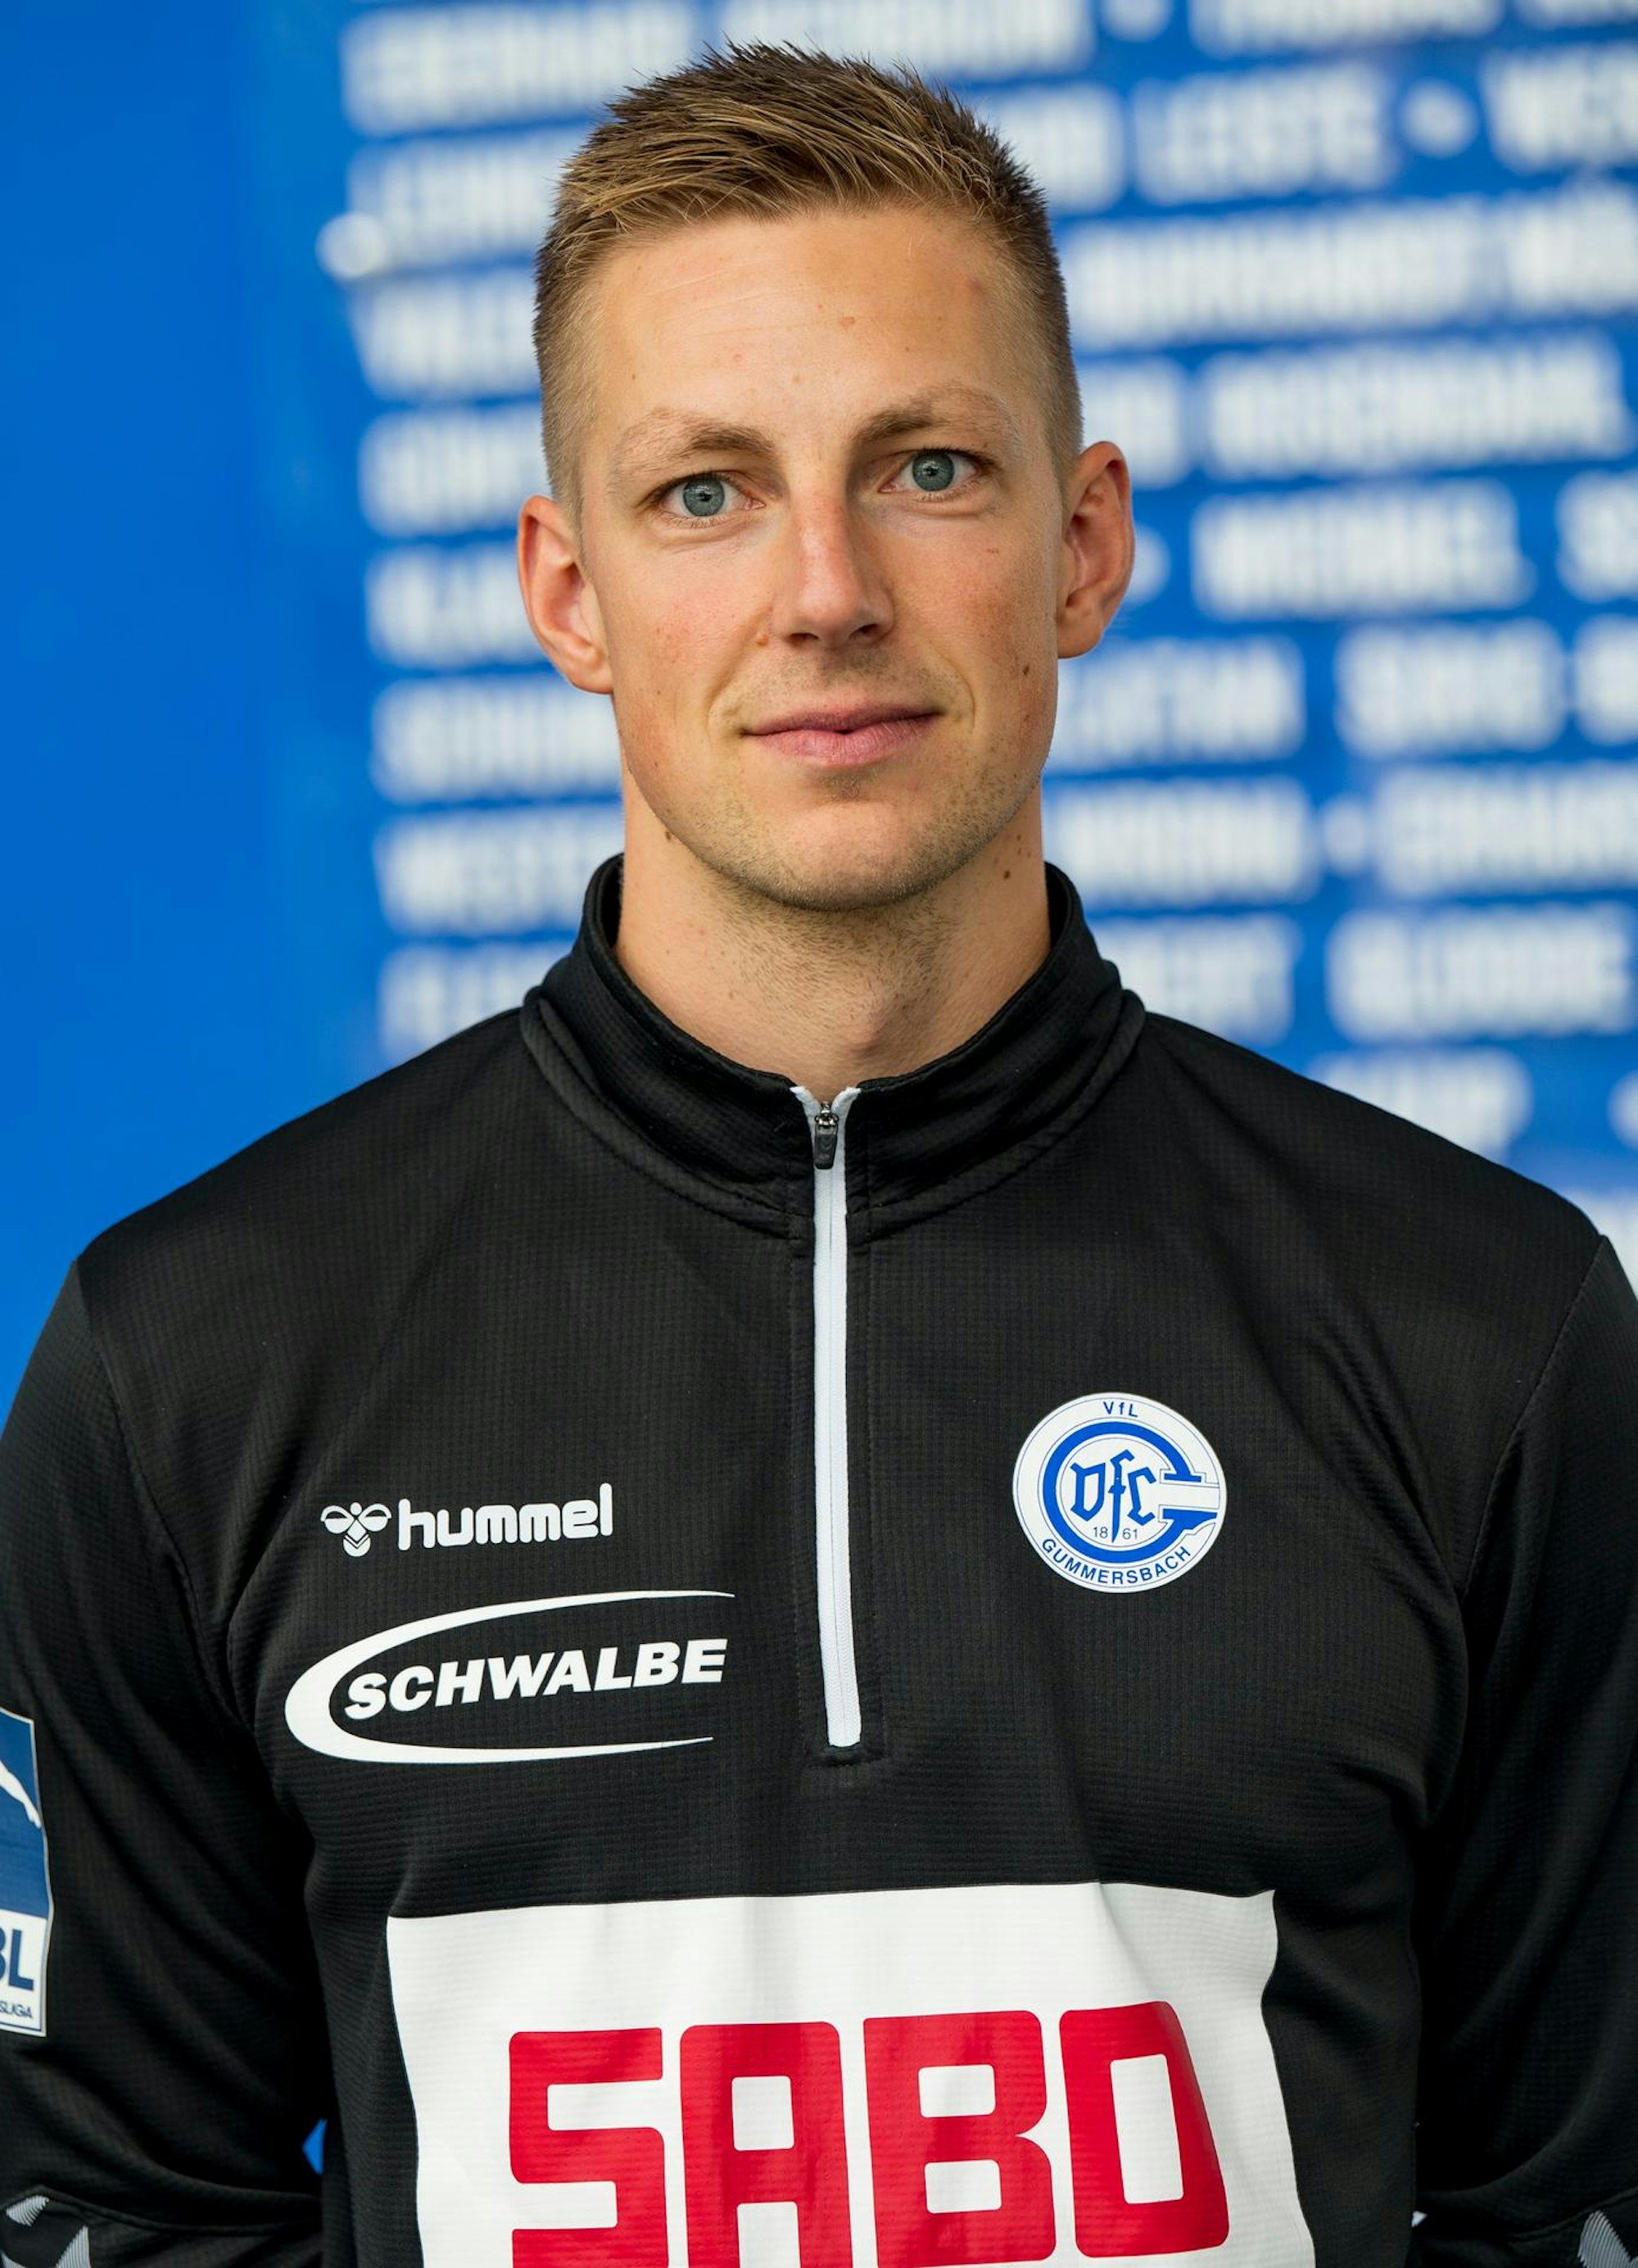 Johannes Scheidgen